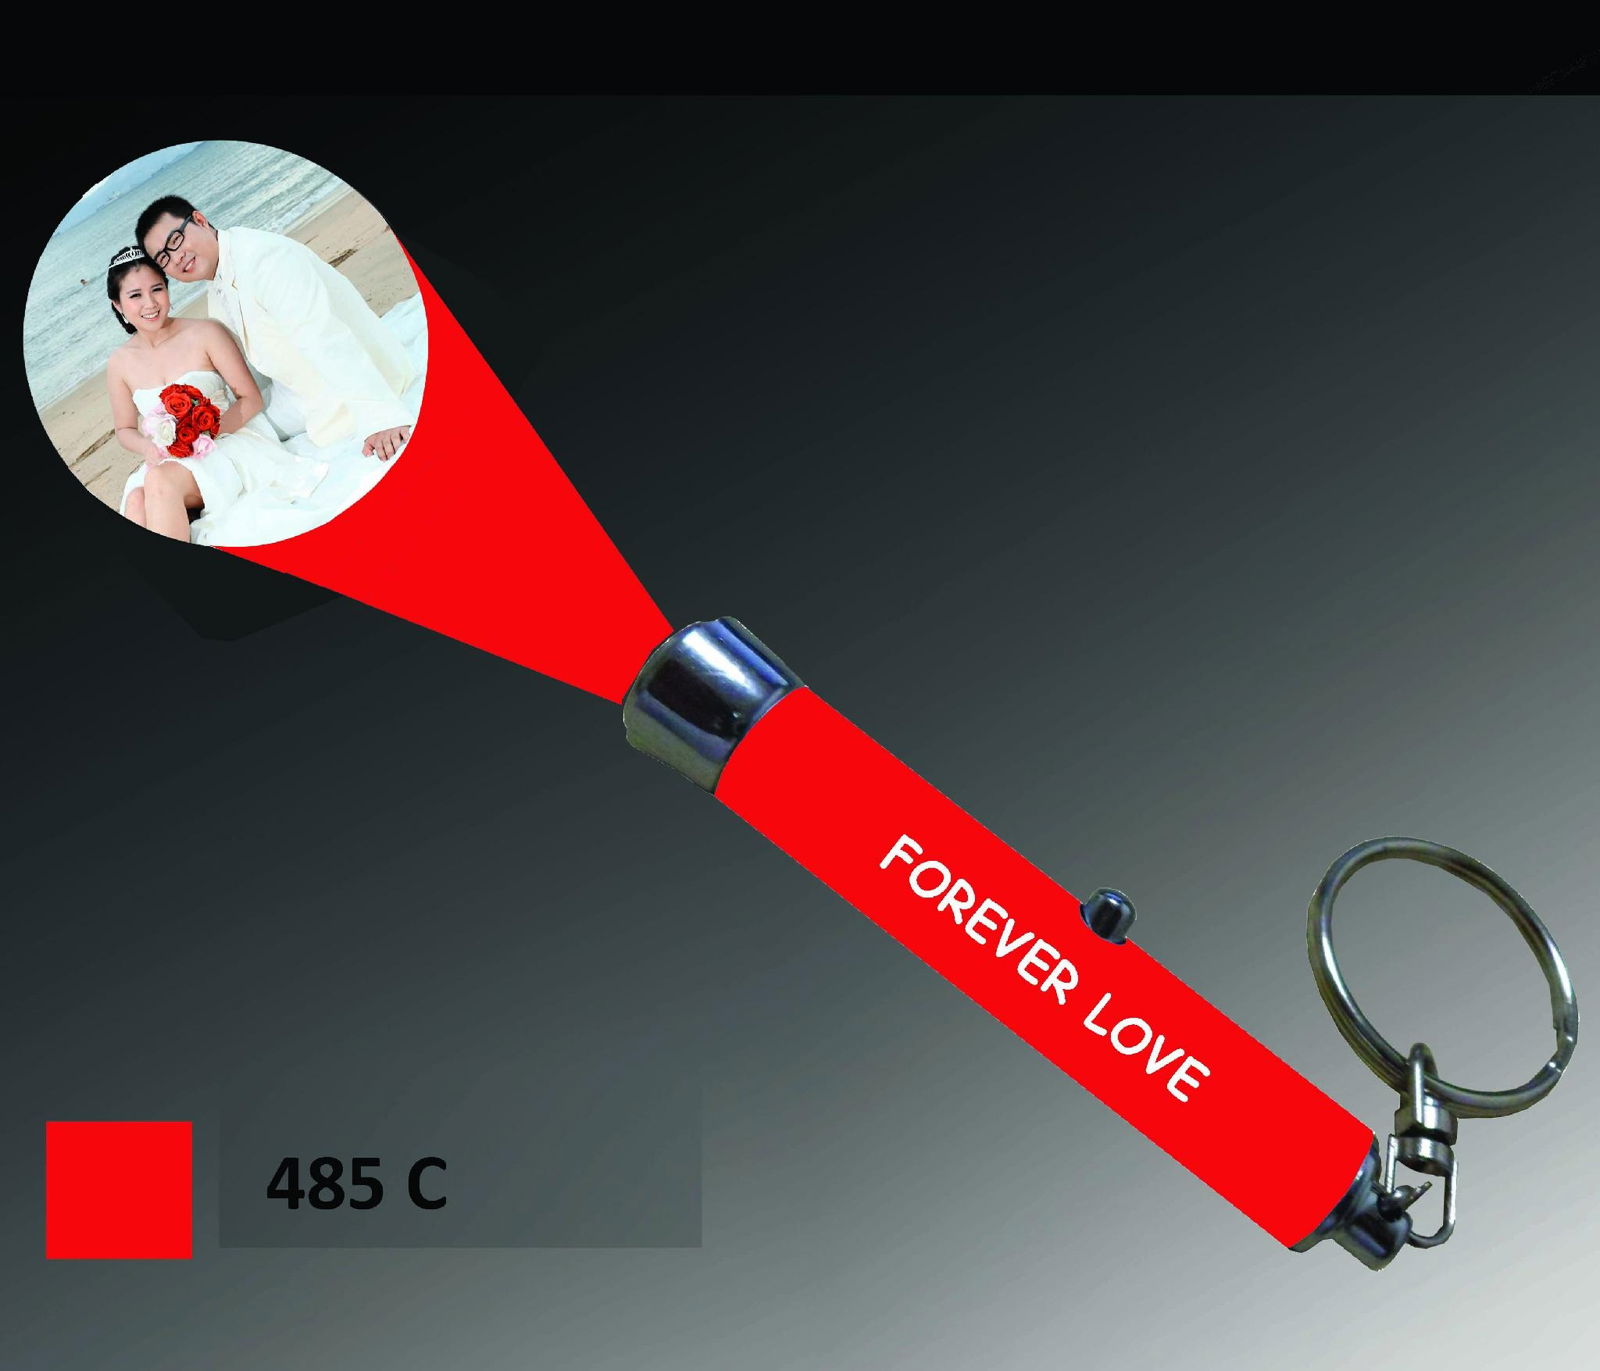 LOGO投影灯 激光投影电筒 LED钥匙扣促销礼品 4